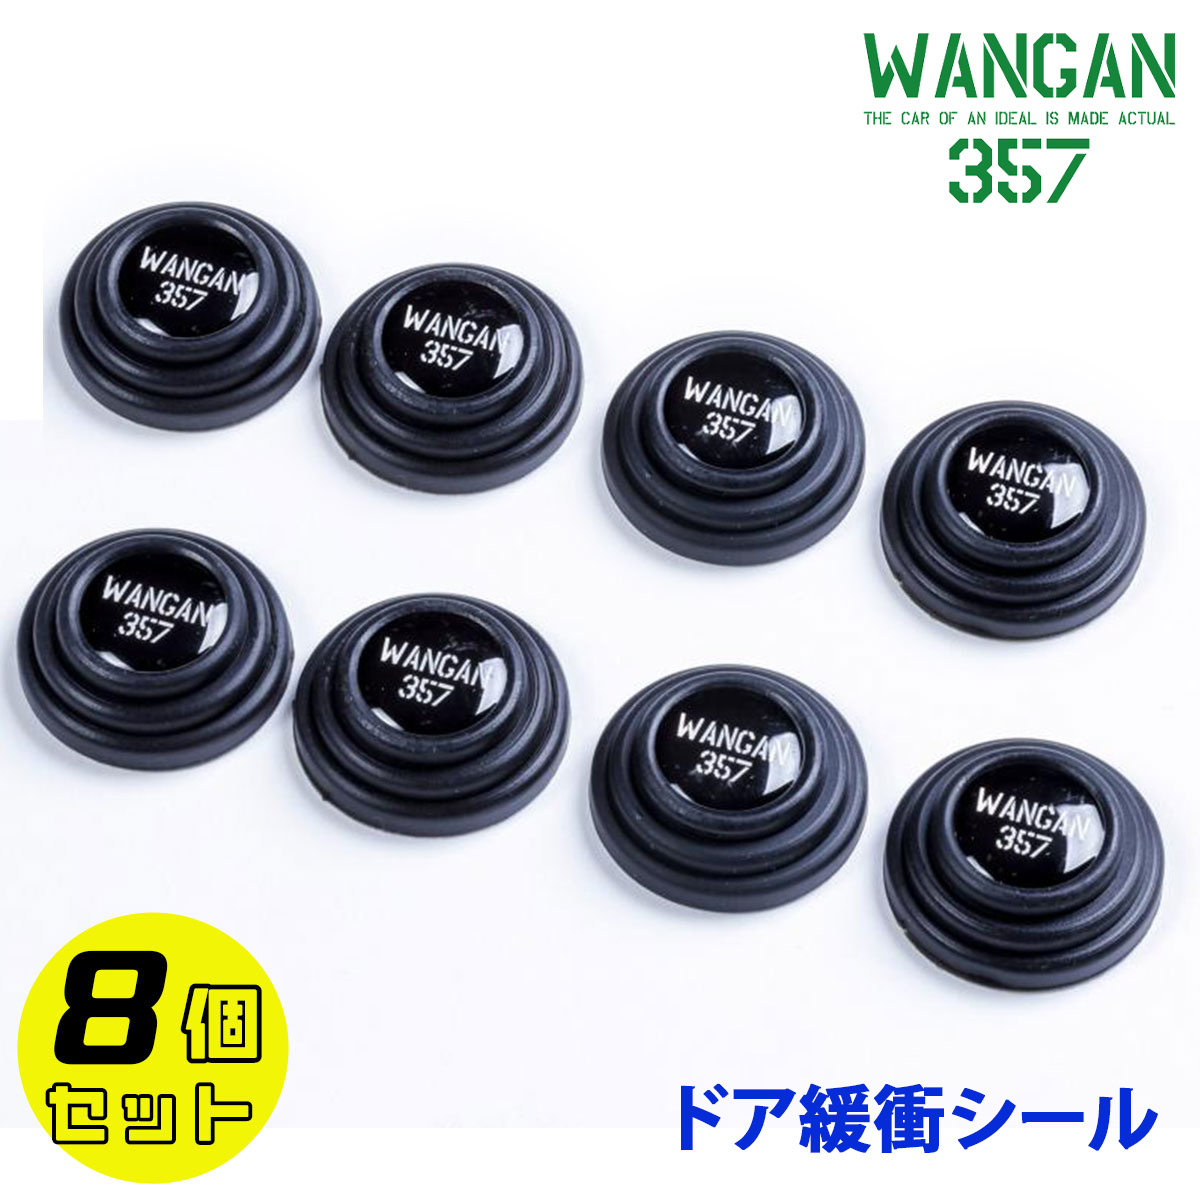 【楽天市場】WANGAN357 ドアクッション ドア緩衝シール 車用